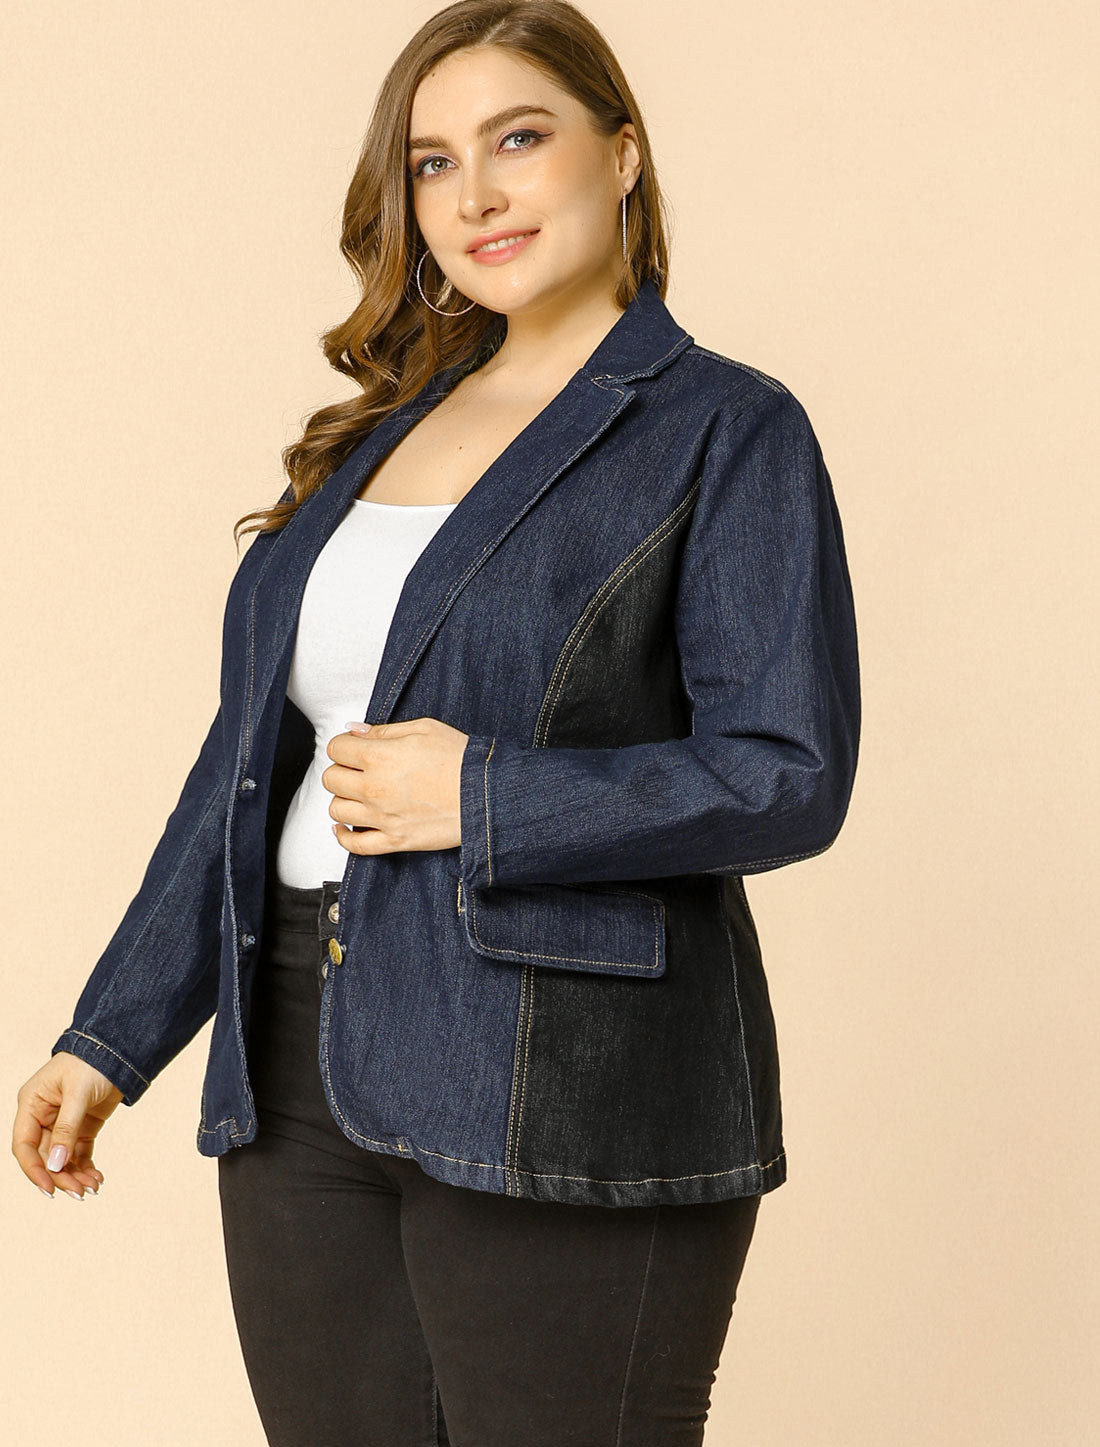 Bublédon Women's Plus Size Denim Jacket Notched Lapel Color Block Stretch Blazer